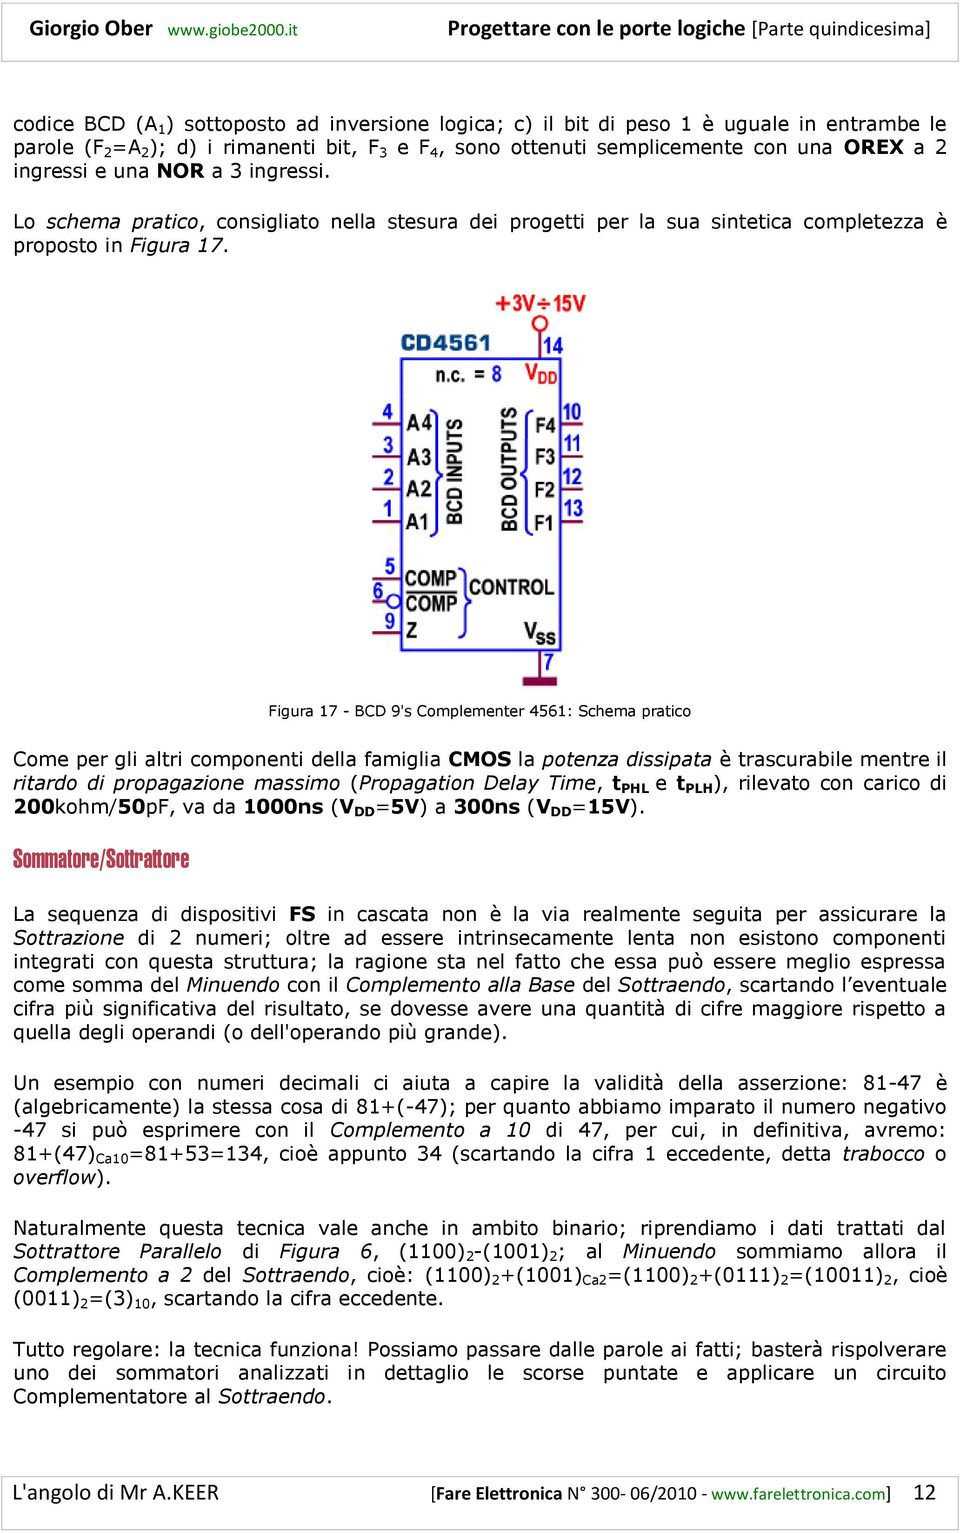 Figura 17 - BCD 9's Complementer 4561: Schema pratico Come per gli altri componenti della famiglia CMOS la potenza dissipata è trascurabile mentre il ritardo di propagazione massimo (Propagation